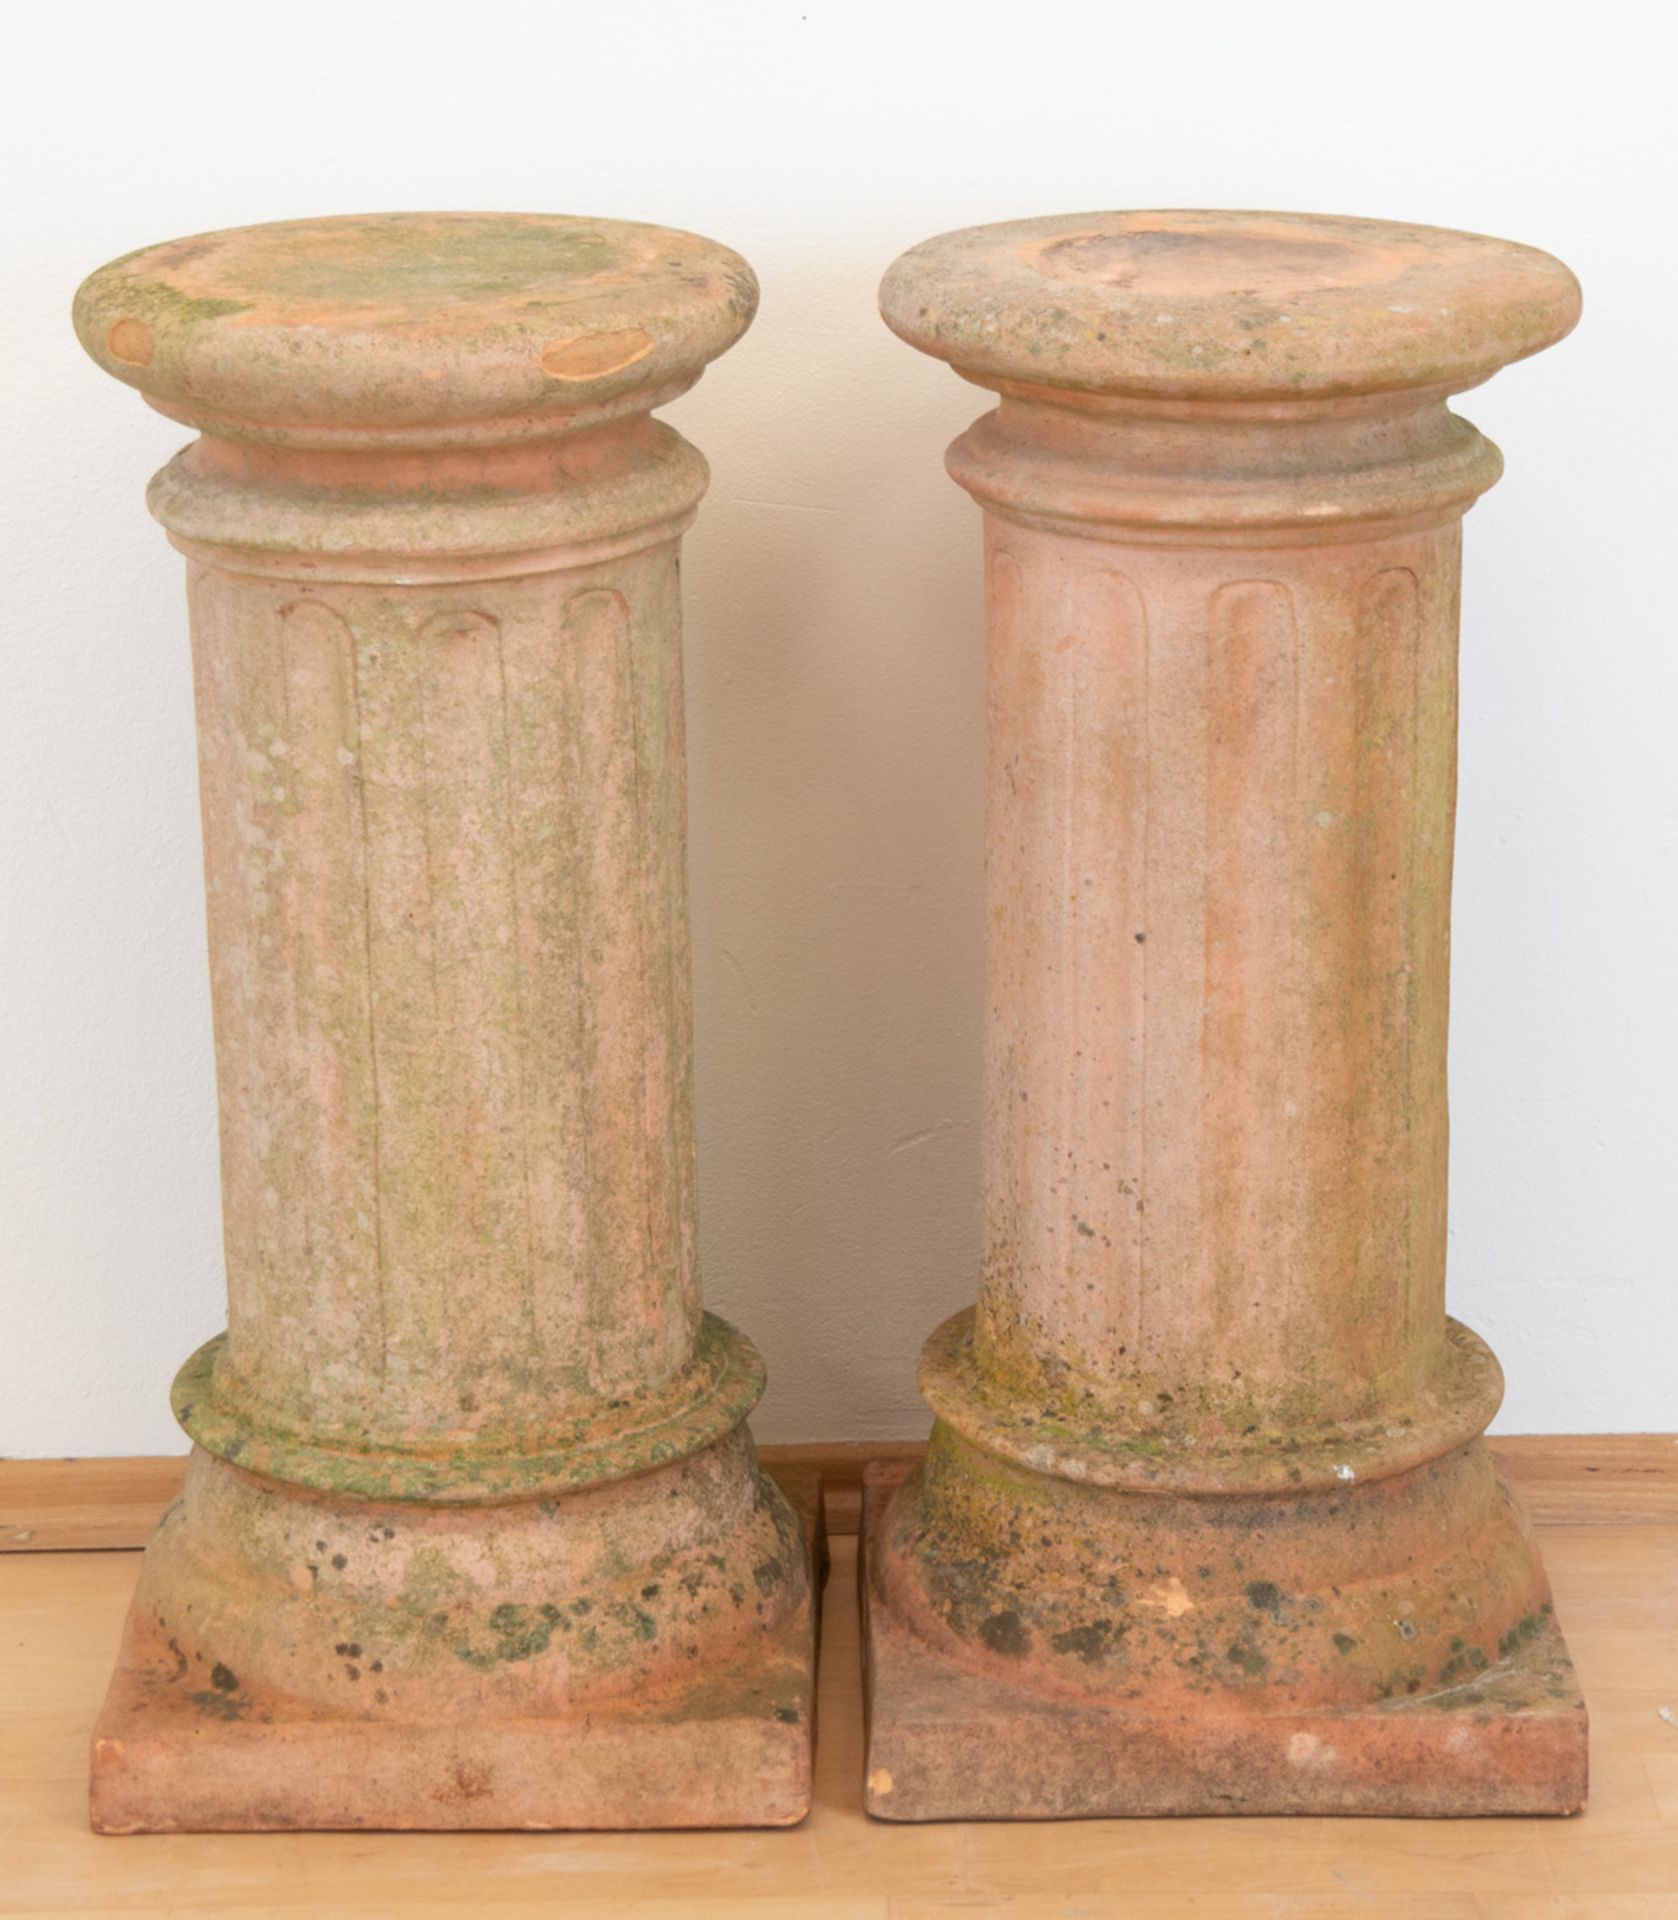 Paar Terrakotta-Säulen, Italien 50/60er Jahre, gemarkt "HD" im Kreis, über quadratischemStand